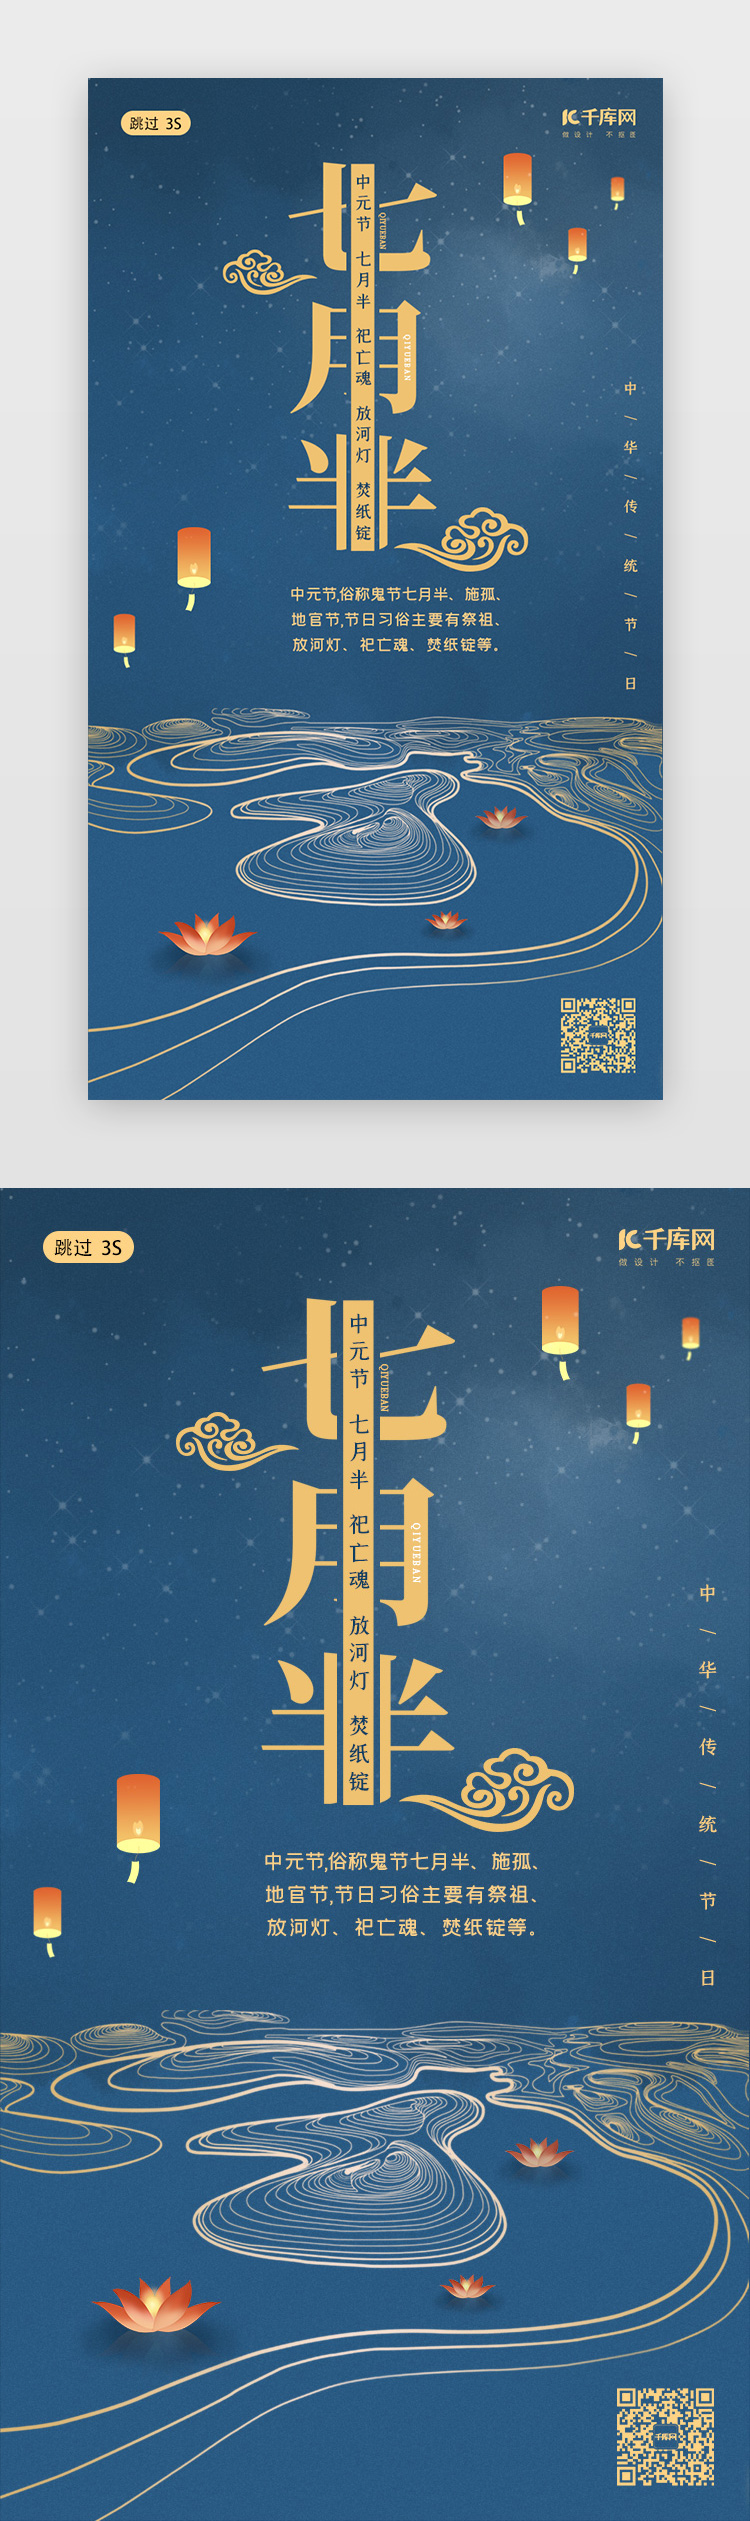 中元节传统节日中国风闪屏页启动页引导页图片